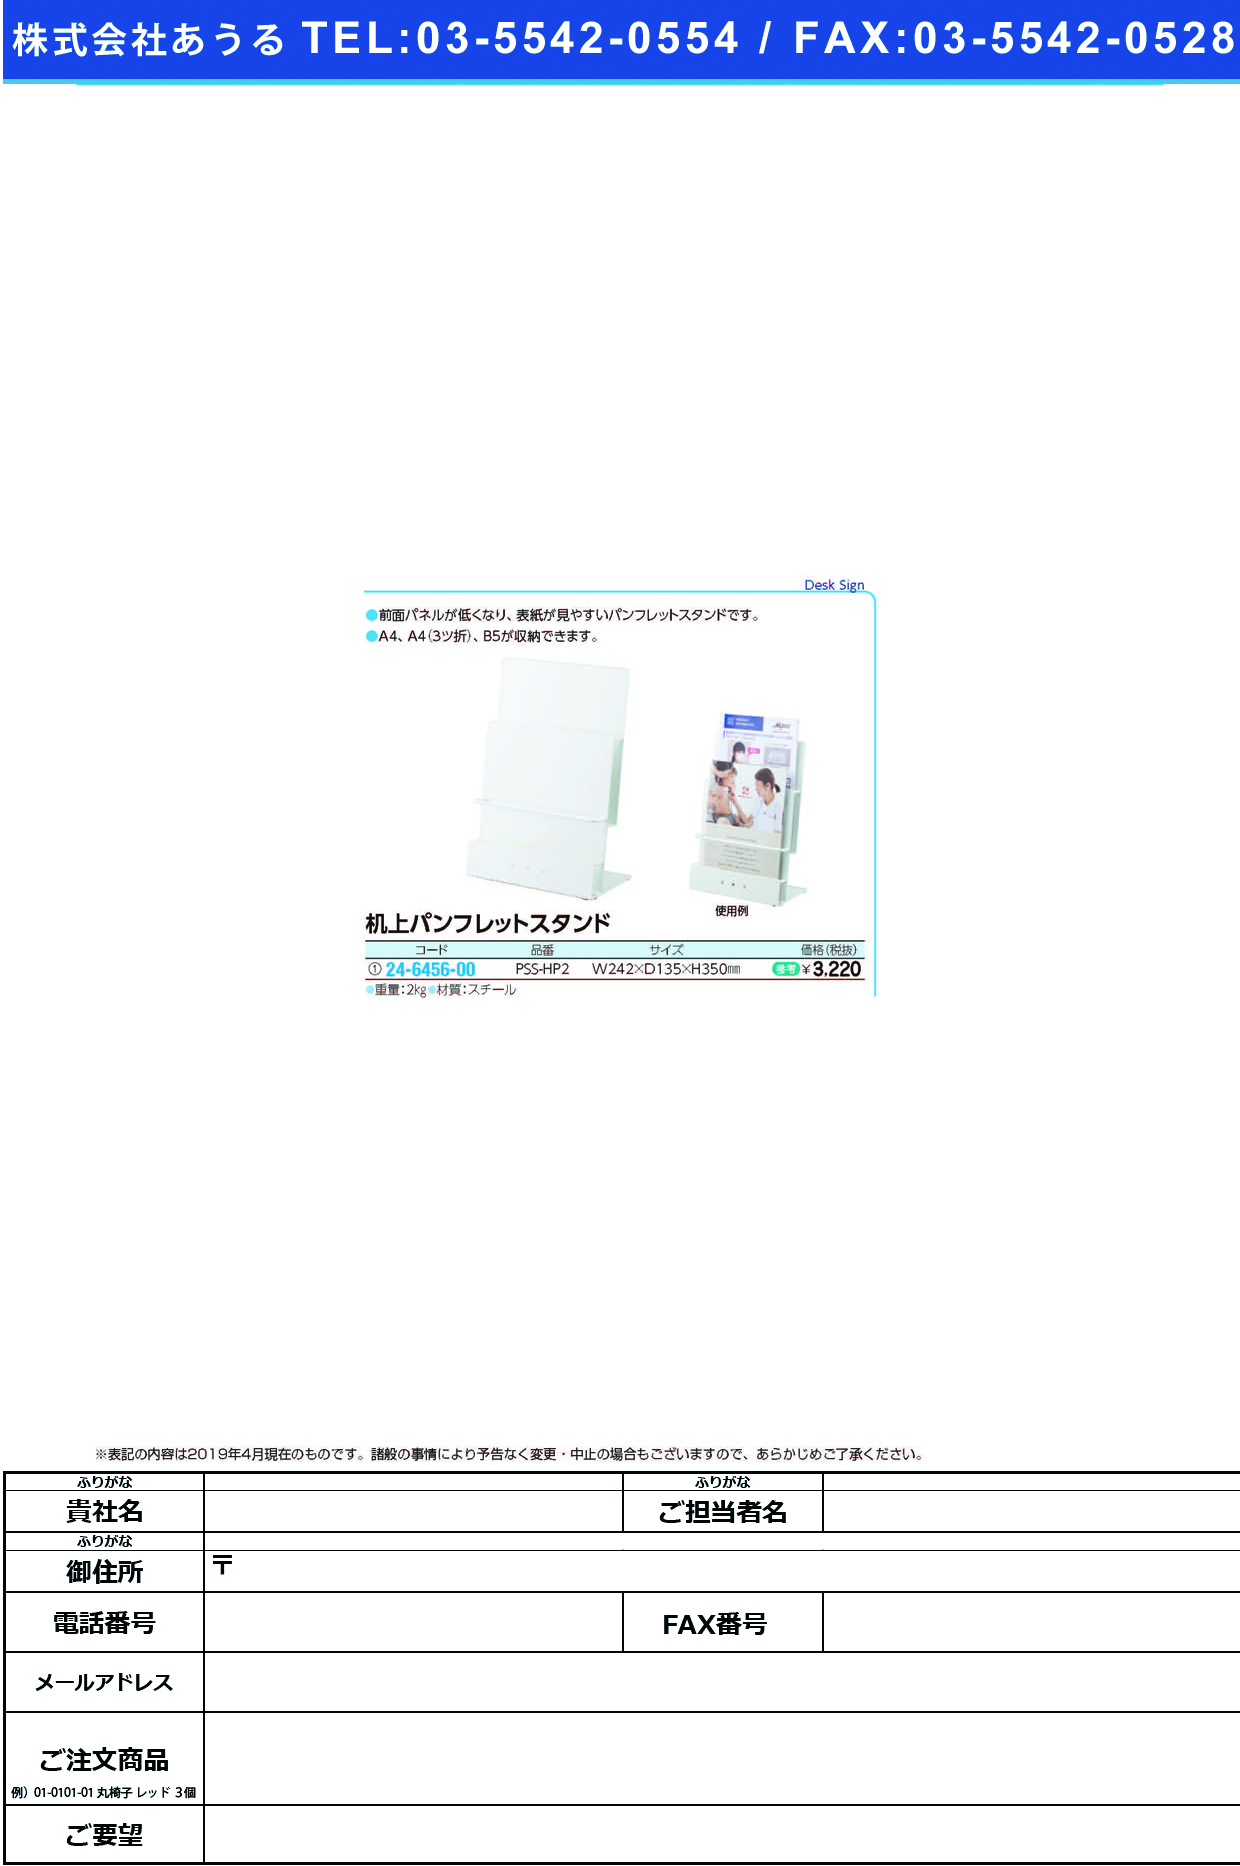 (24-6456-00)机上パンフレットスタンド PSS-HP2 ｷｼﾞｮｳﾊﾟﾝﾌﾚｯﾄｽﾀﾝﾄﾞ【1個単位】【2019年カタログ商品】